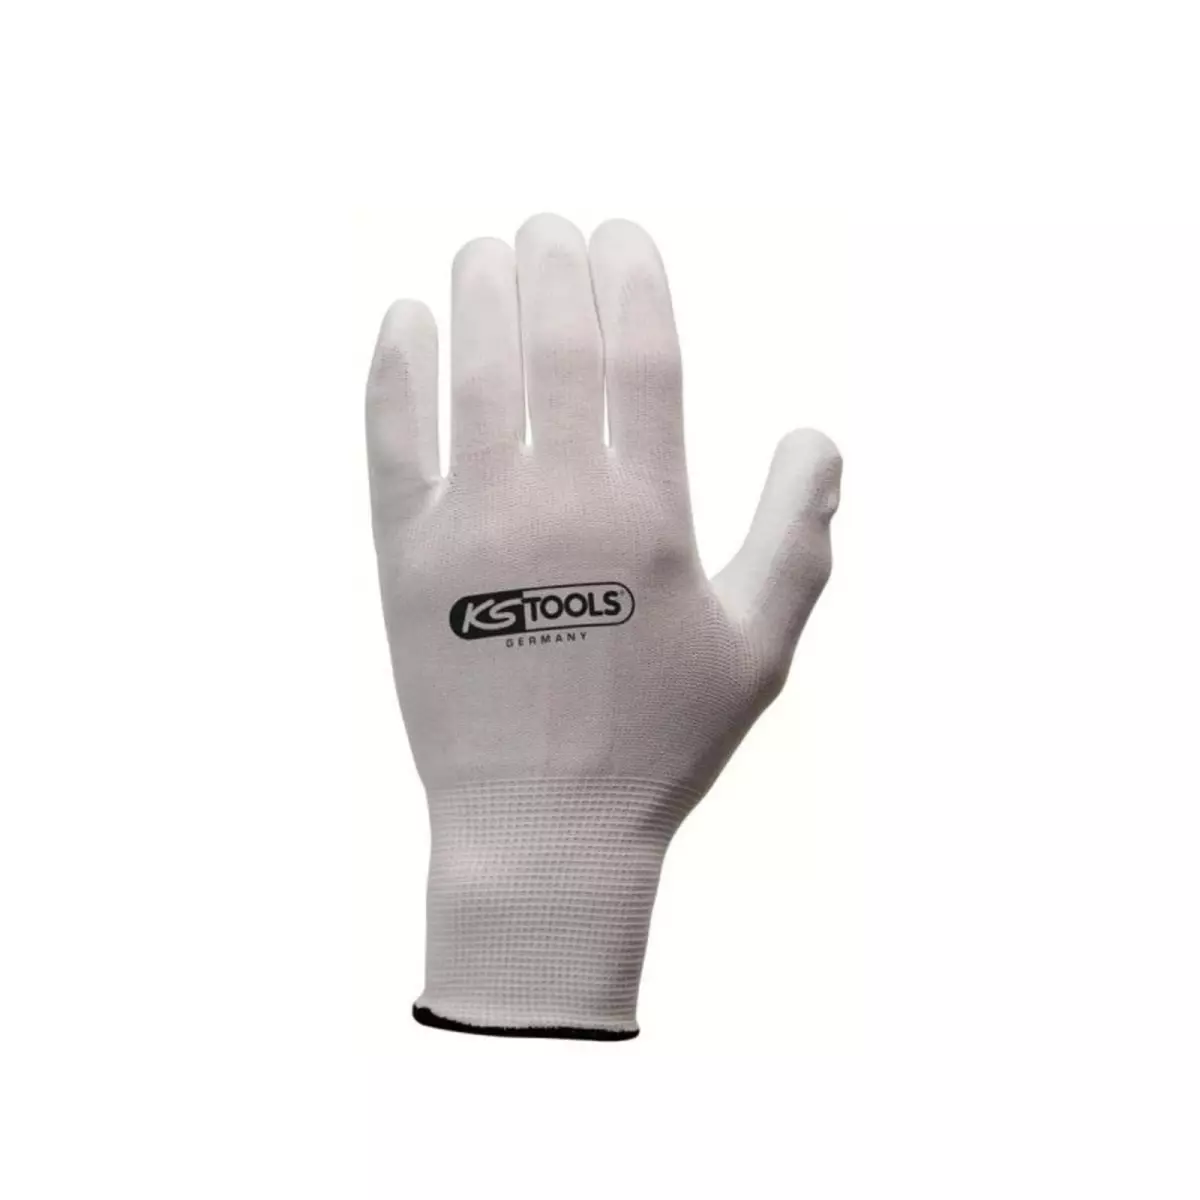 Ks Tools Boîte de 12 paires de gants KS TOOLS - Microfibres - Blanc - Taille XL - 310.0455